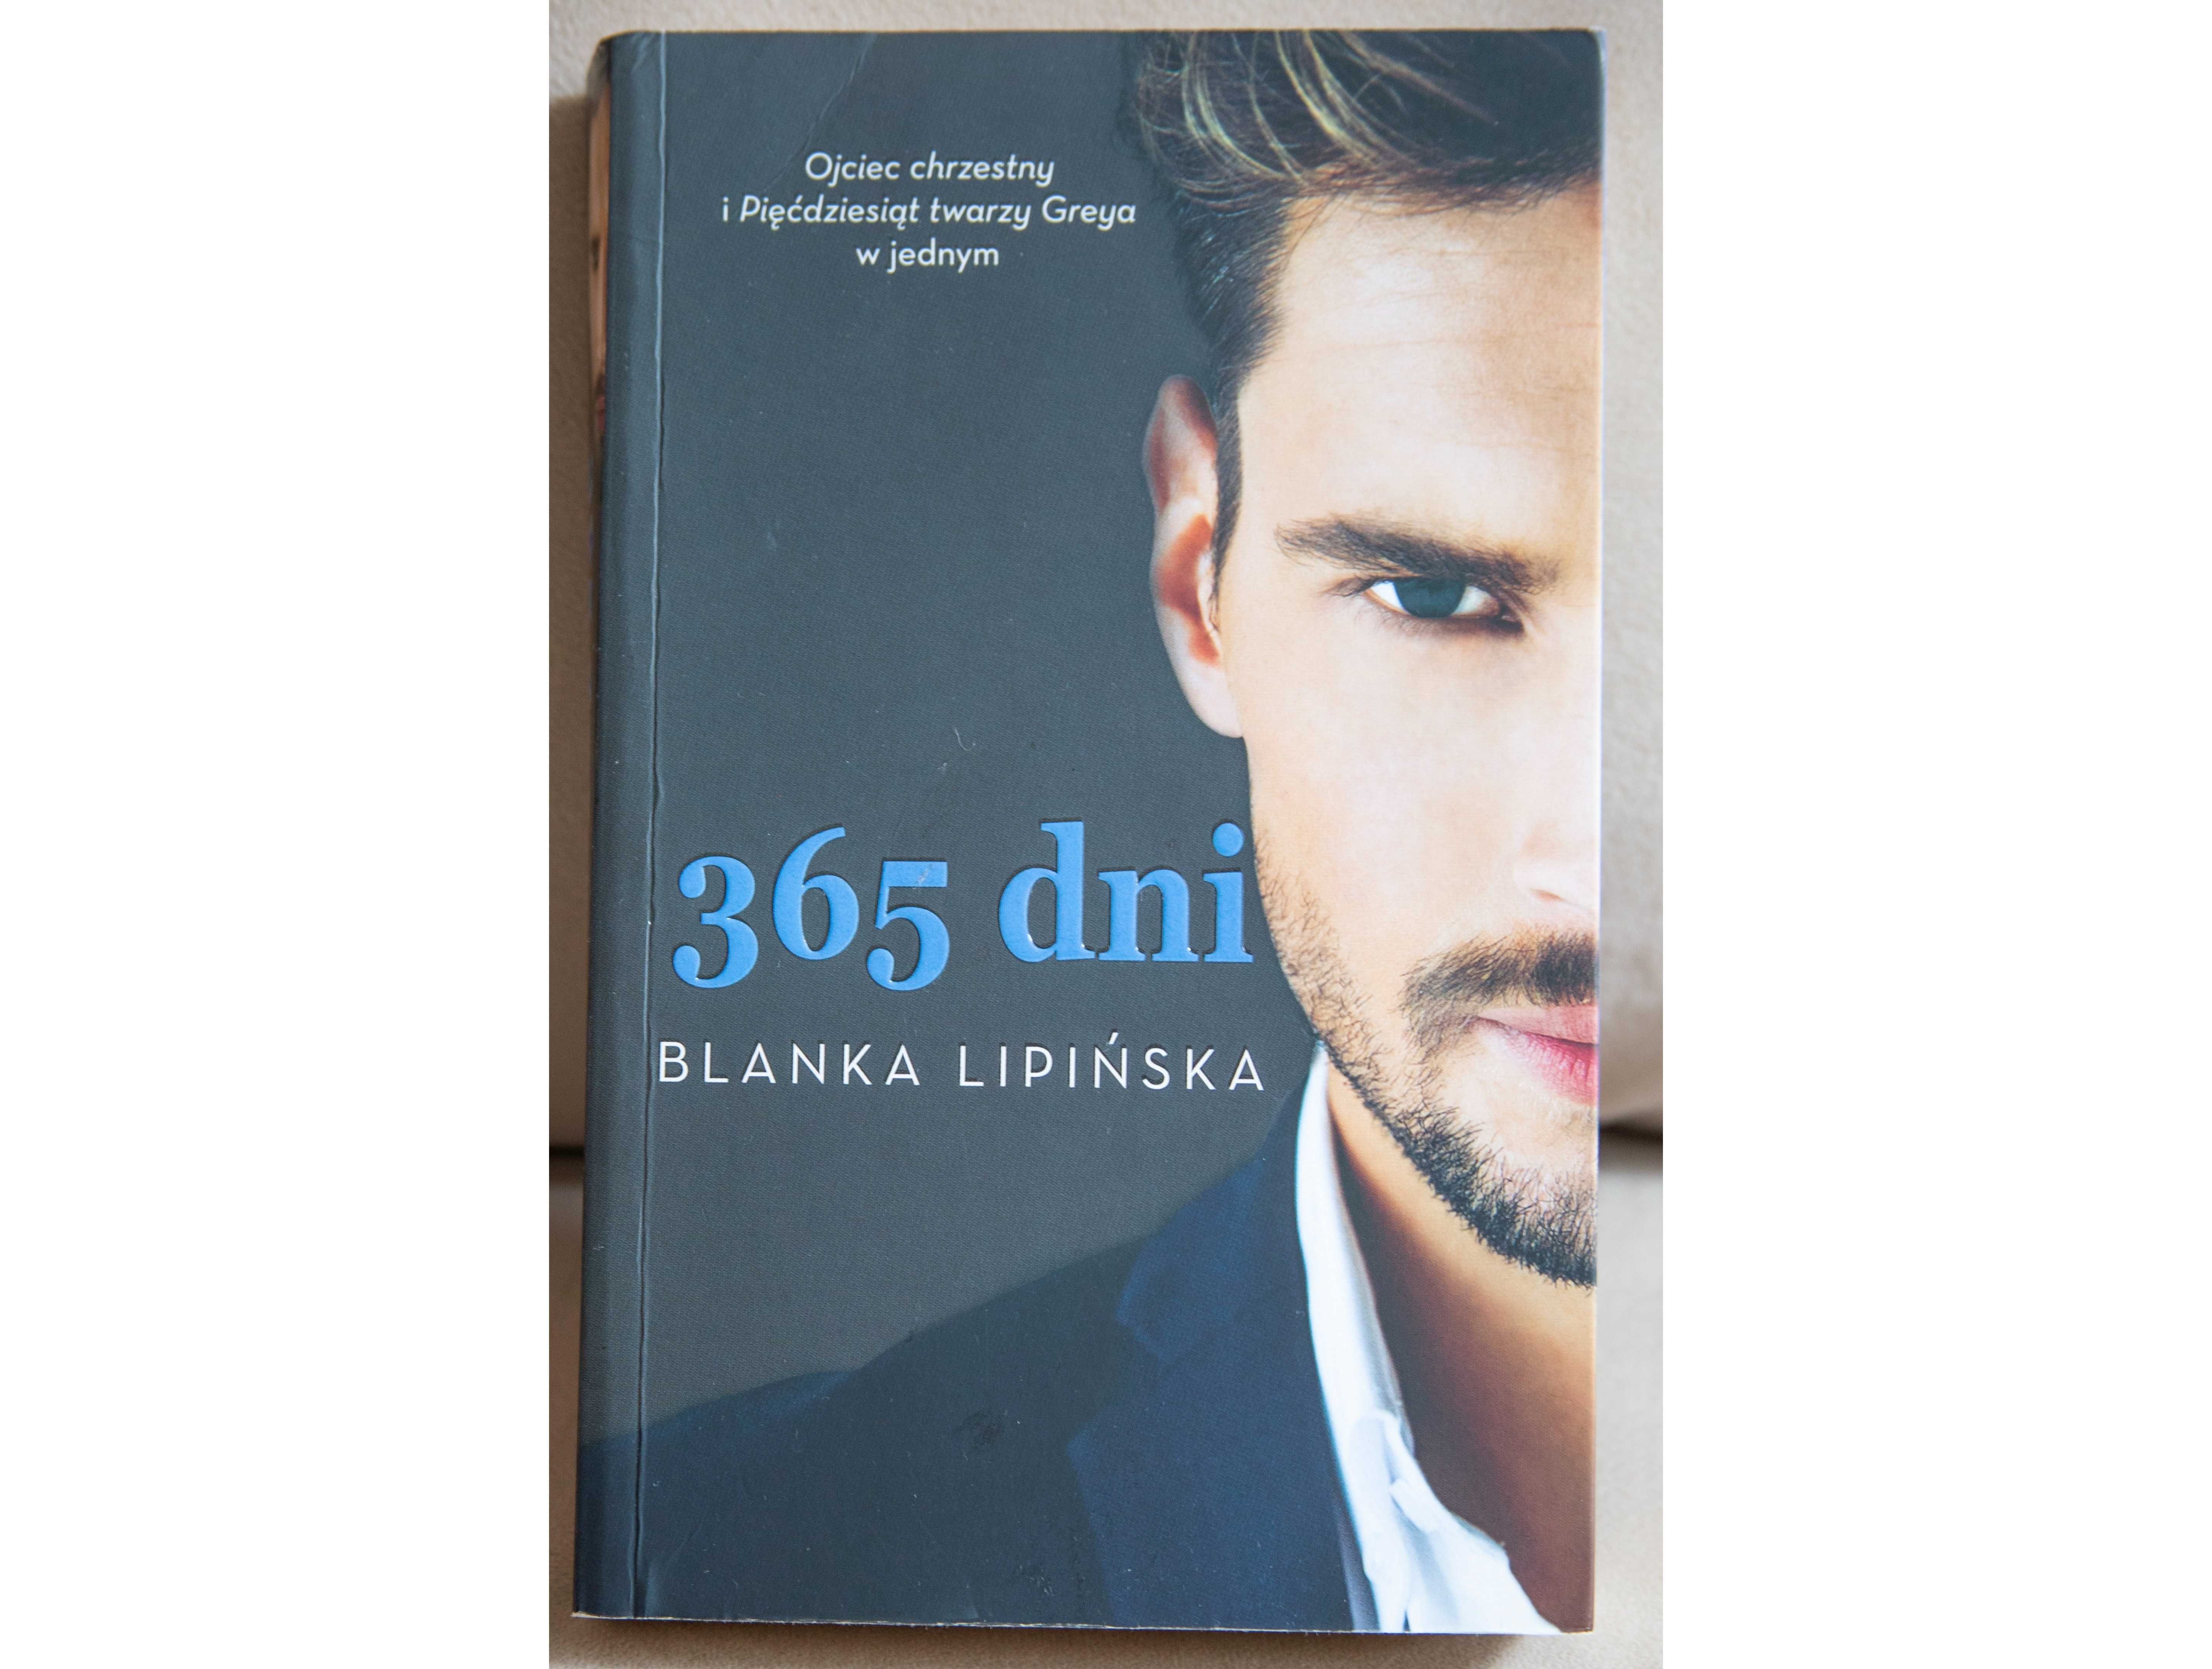 Książka "365 dni" Blanka Lipińska